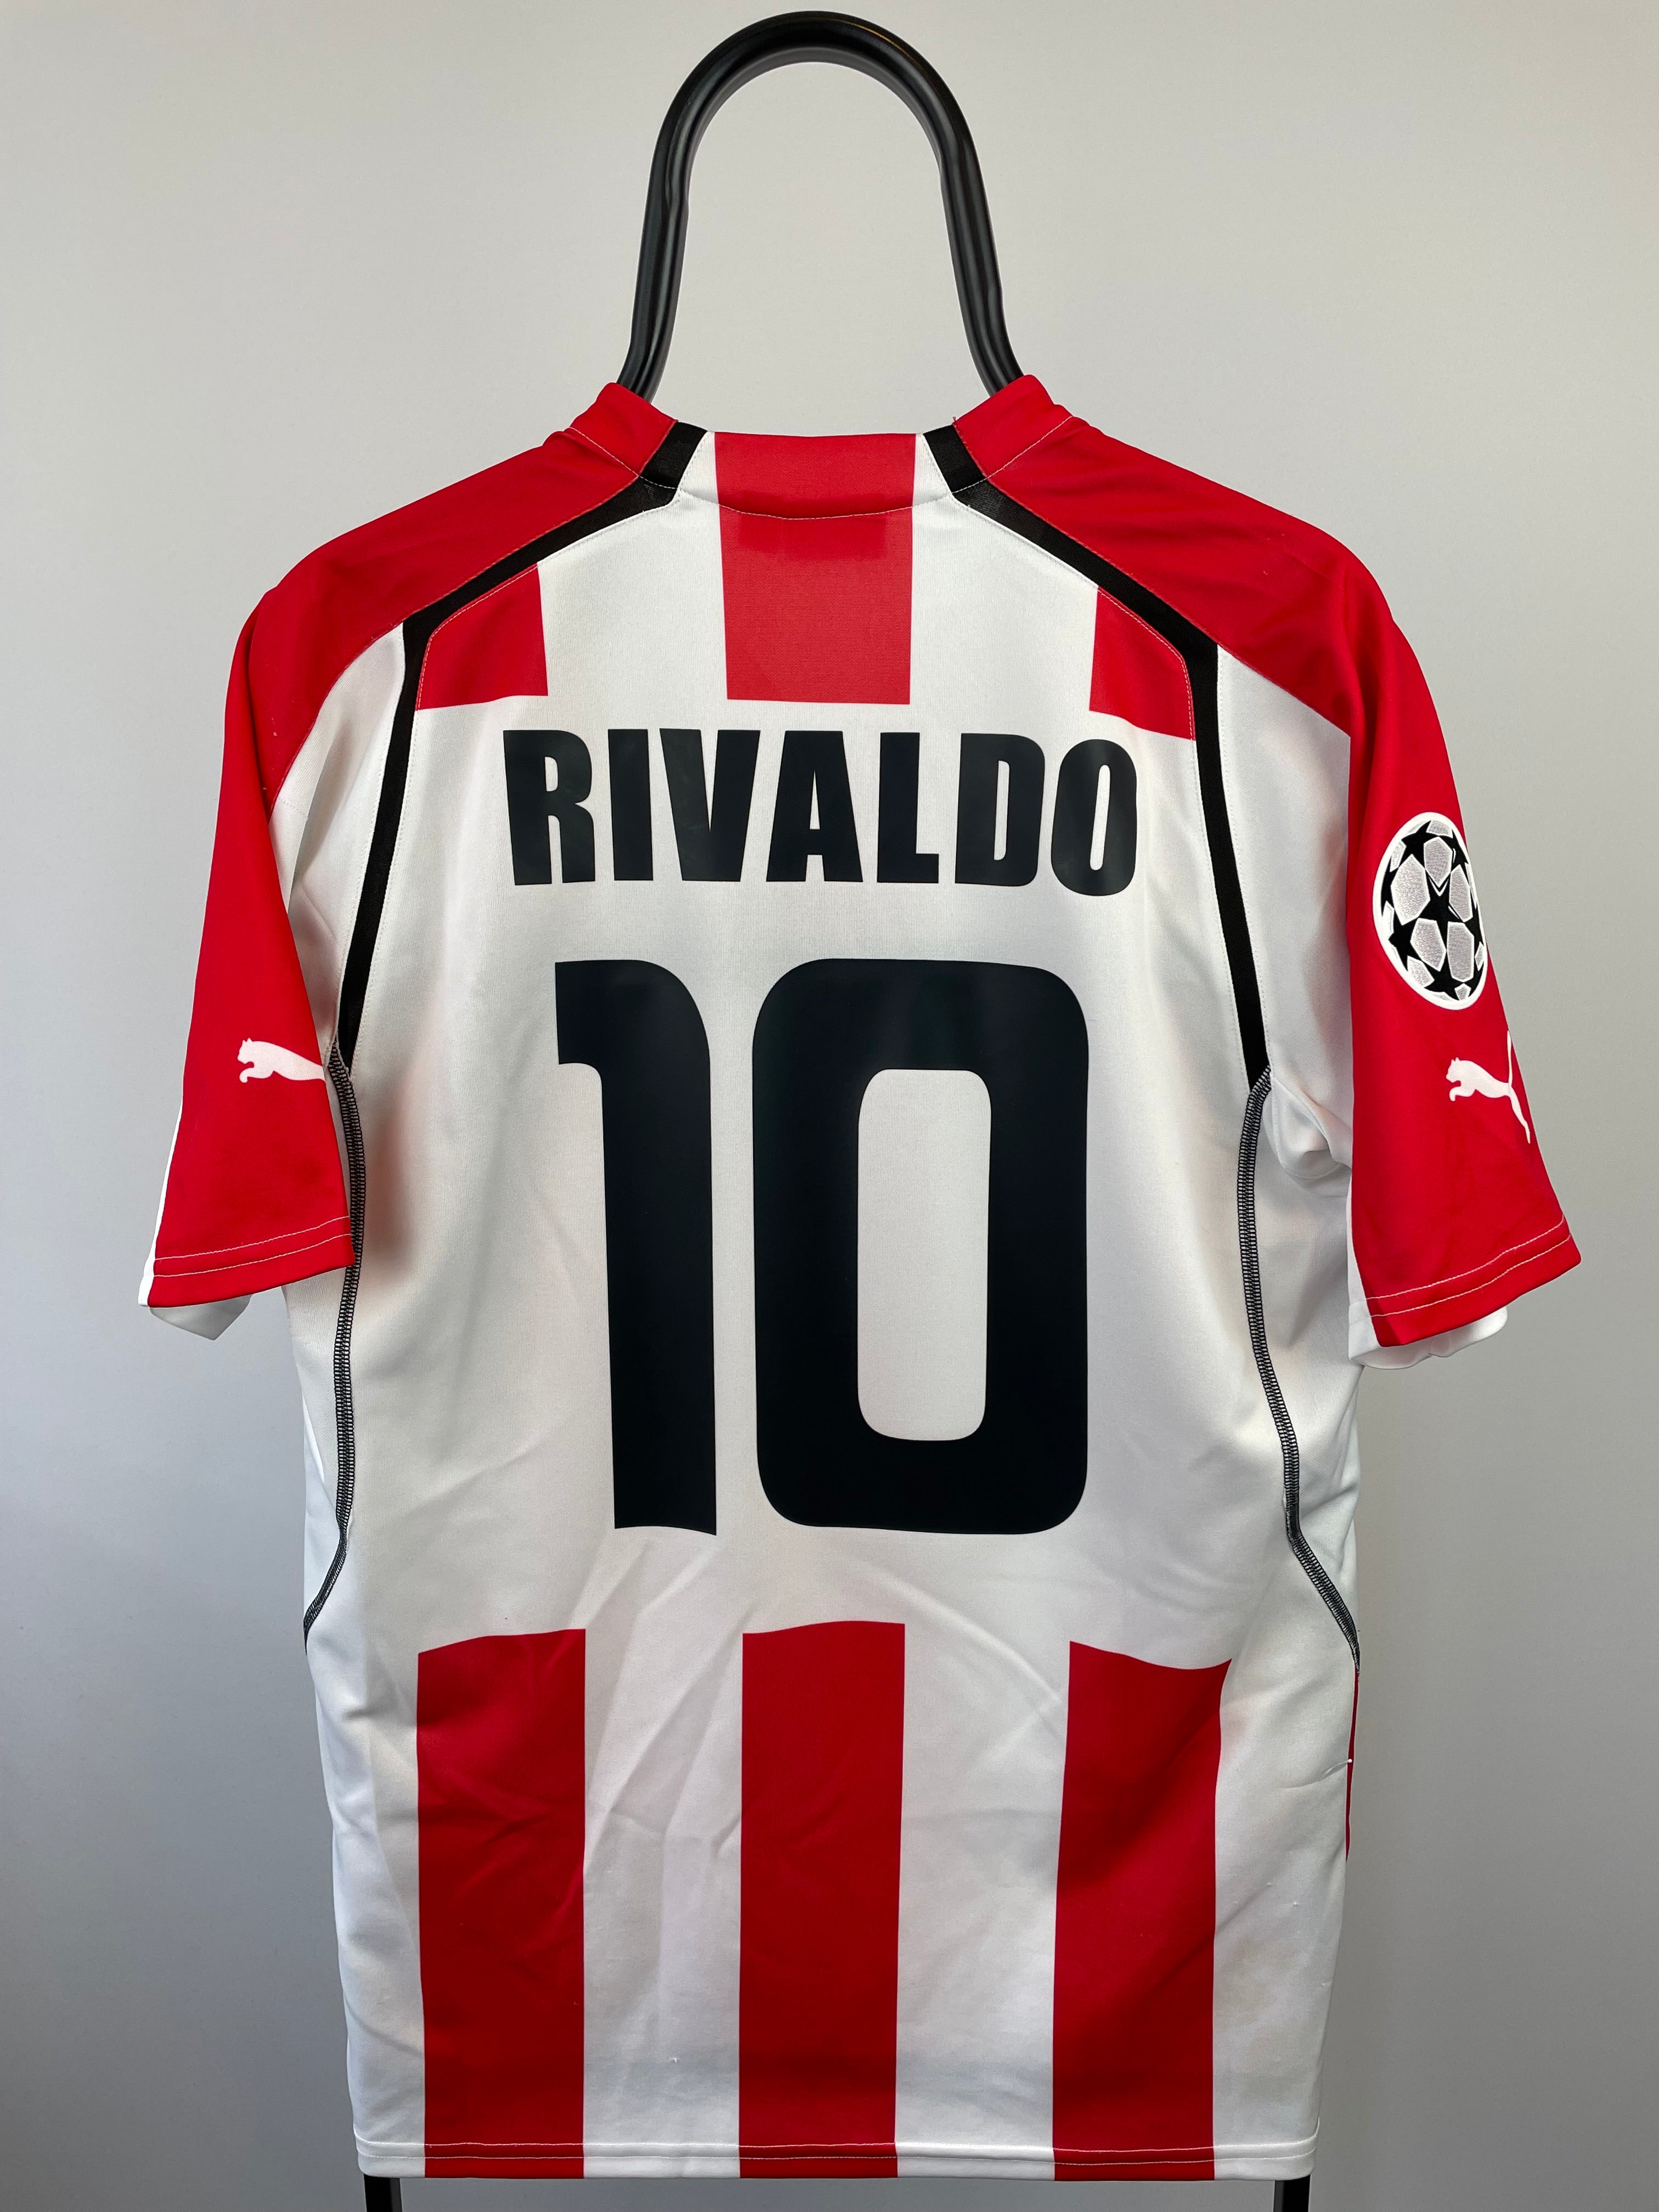 Rivaldo Olympiakos 05/06 hjemmebanetrøje - L